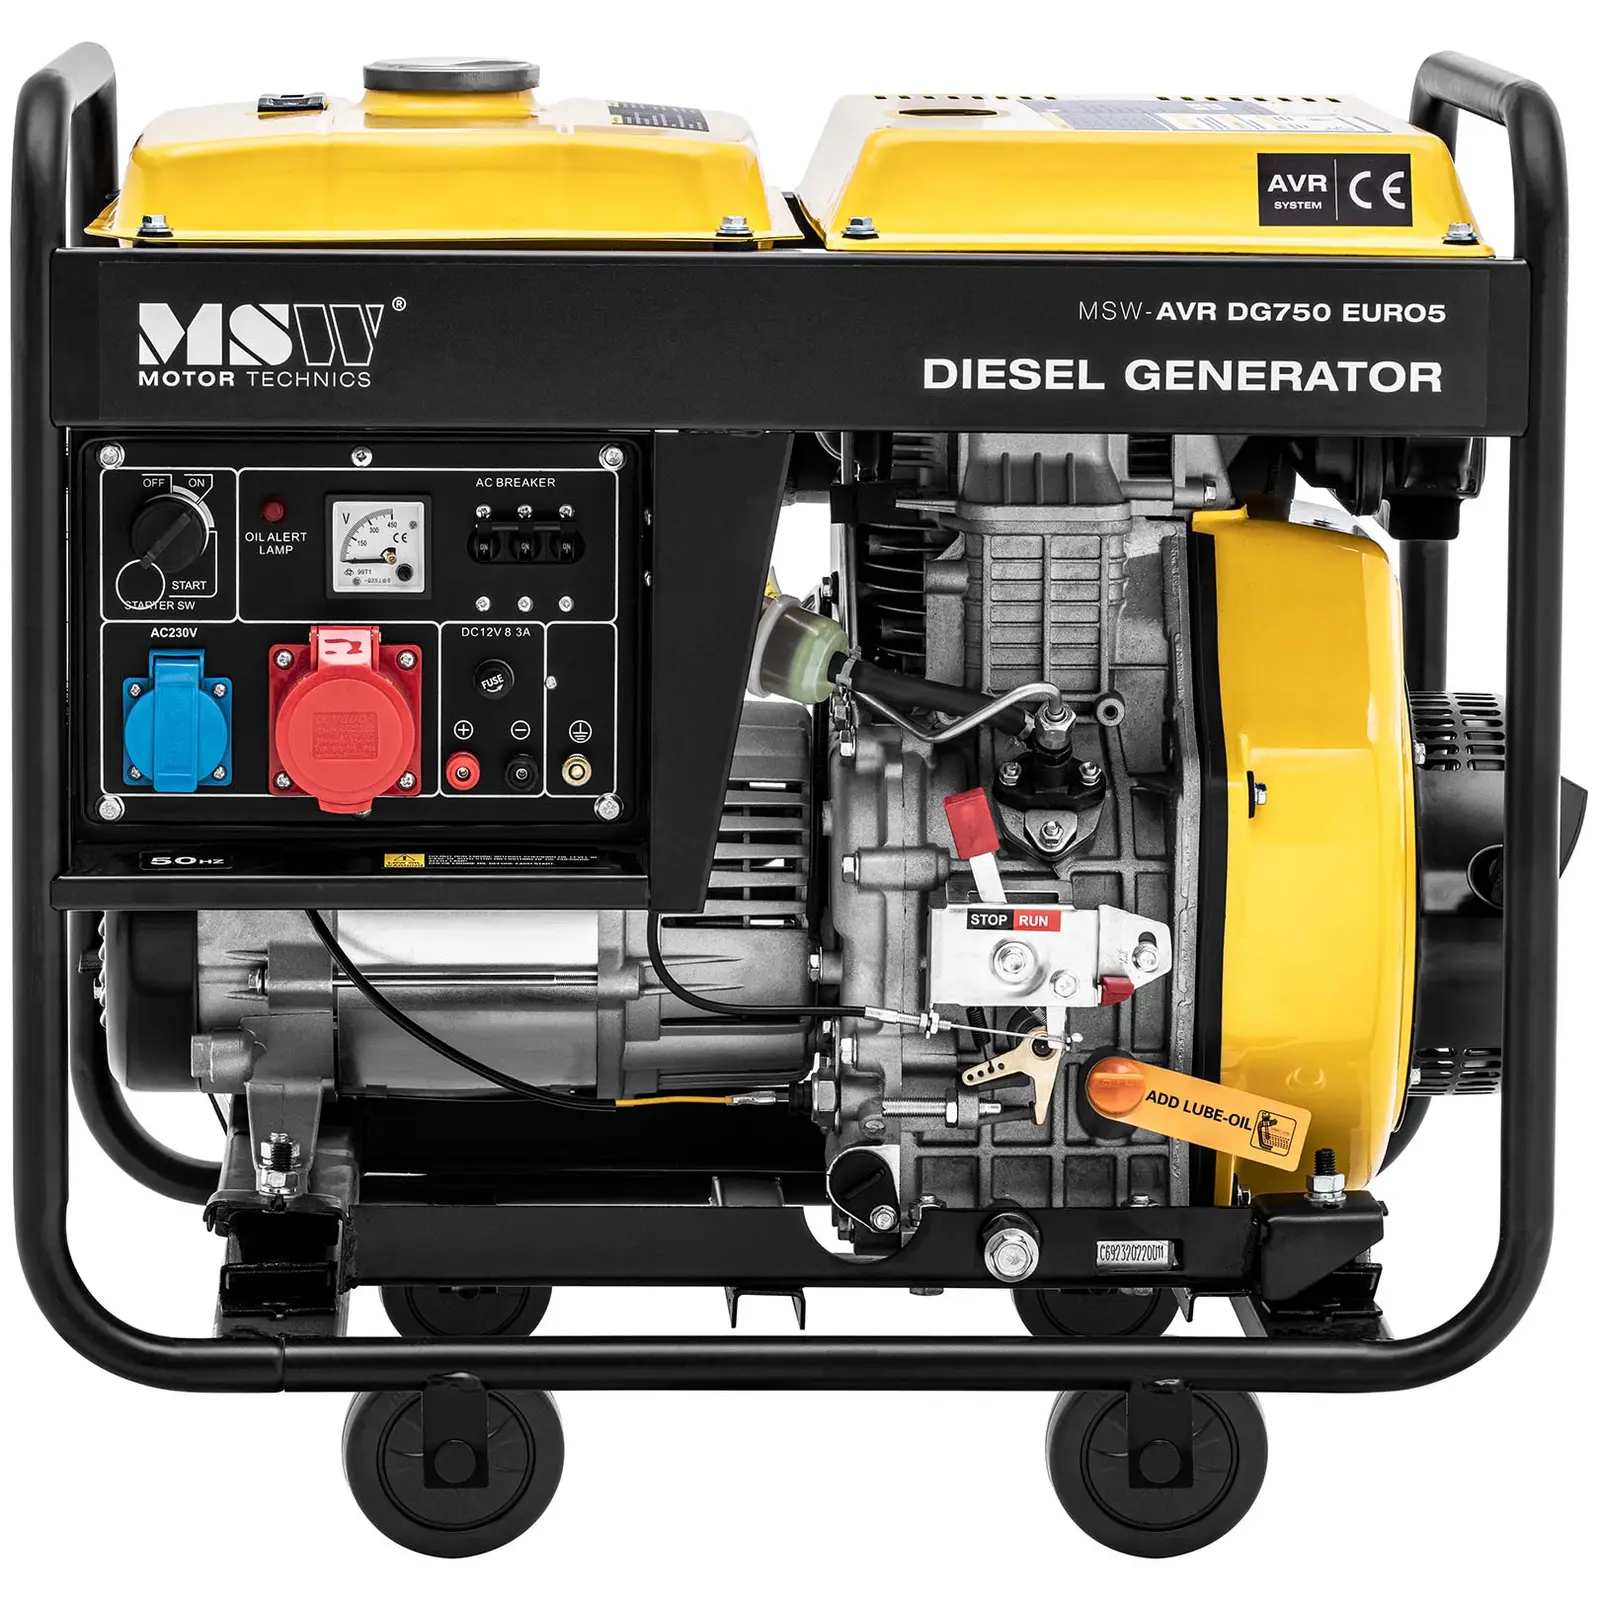 B-varer Dieselgenerator - 1650 / 4600 W - 12.5 L - 230/400 V - mobil - AVR - Euro 5